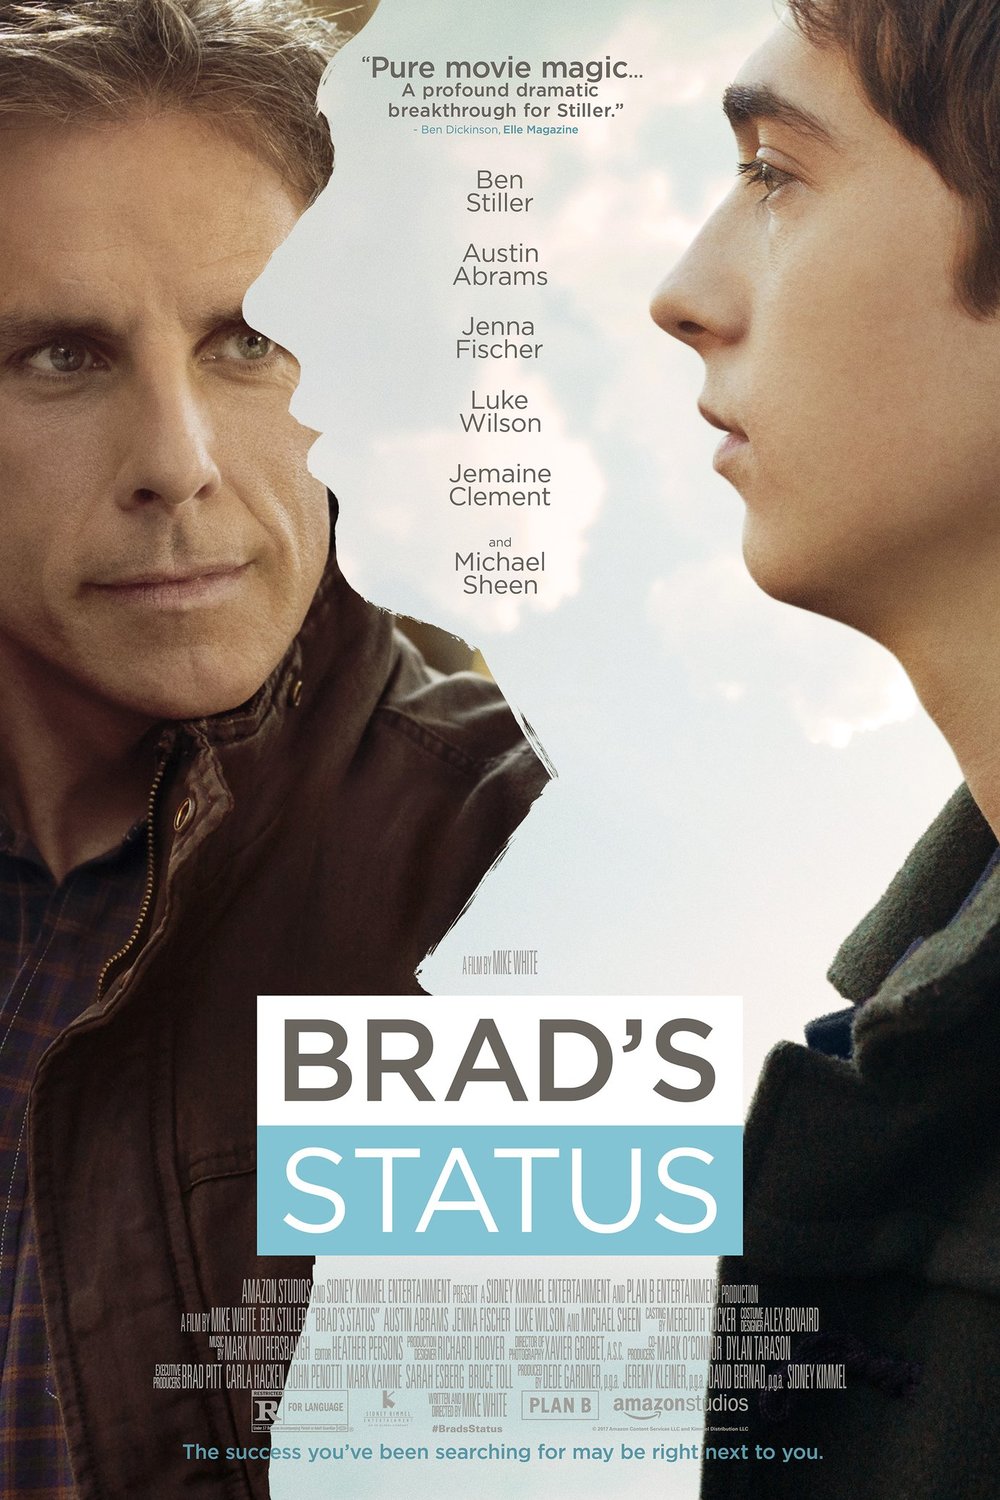 Poster of the movie Brad's Status